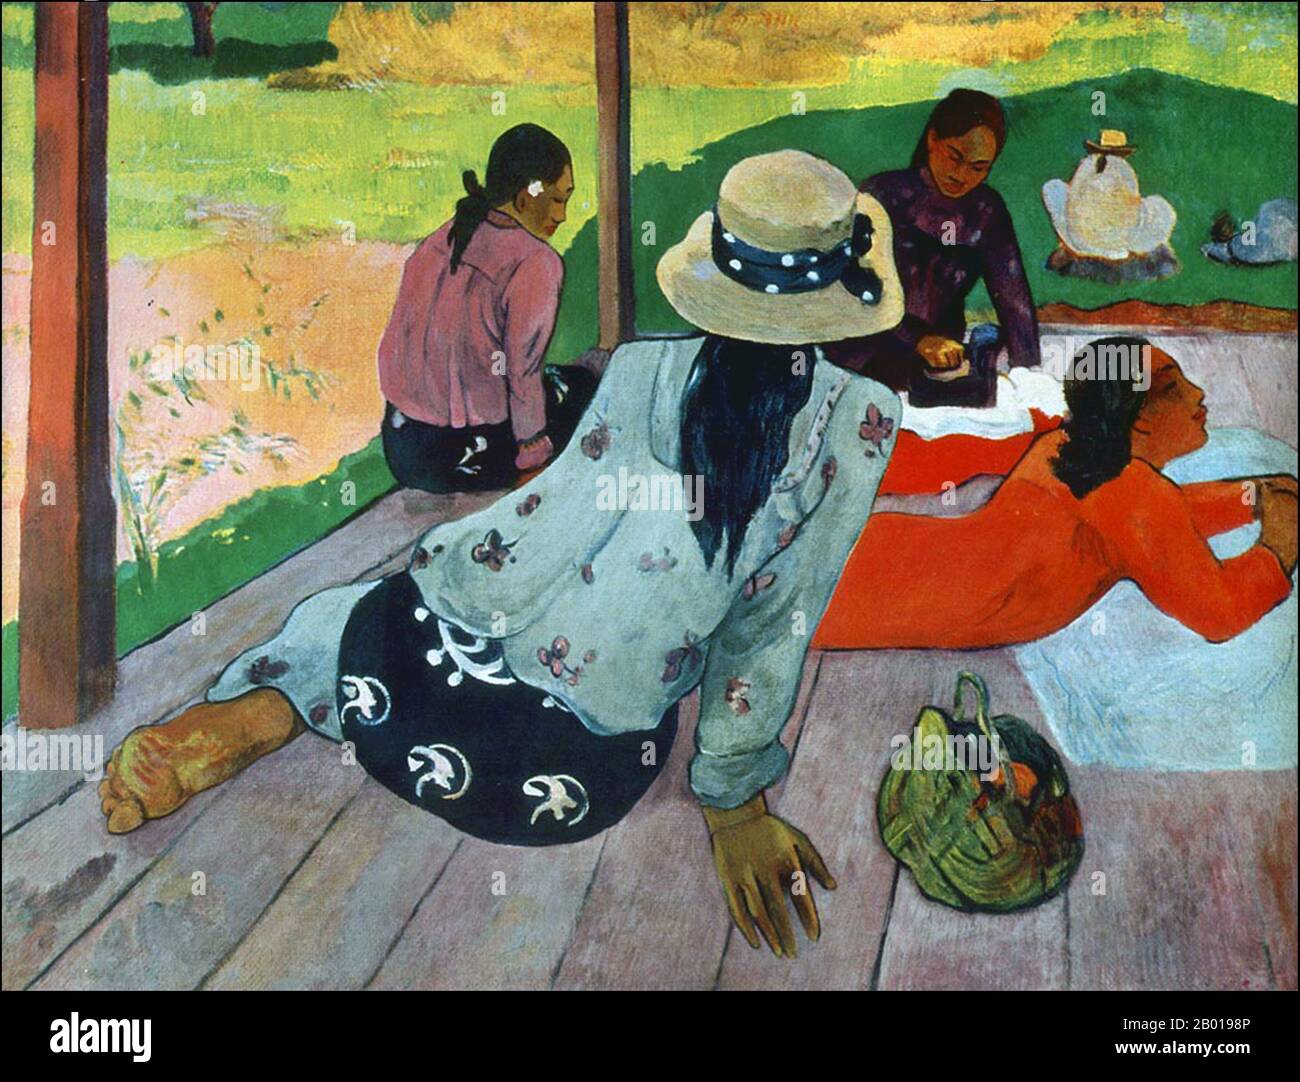 Tahiti: 'La Sieste' (la Siesta). Peinture à l'huile sur toile par Paul Gauguin (7 juin 1848 - 8 mai 1903), c. 1892-1894. Paul Gauguin est né à Paris en 1848 et a passé une partie de son enfance au Pérou. Il a travaillé comme courtier en Bourse avec peu de succès et a souffert de crises de dépression grave. Il a également peint. En 1891, Gauguin, frustré par le manque de reconnaissance à la maison et financièrement indigente, navigue vers les tropiques pour échapper à la civilisation européenne et "tout ce qui est artificiel et conventionnel". Son temps il y avait le sujet de beaucoup d'intérêt à l'époque et dans les temps modernes. Banque D'Images